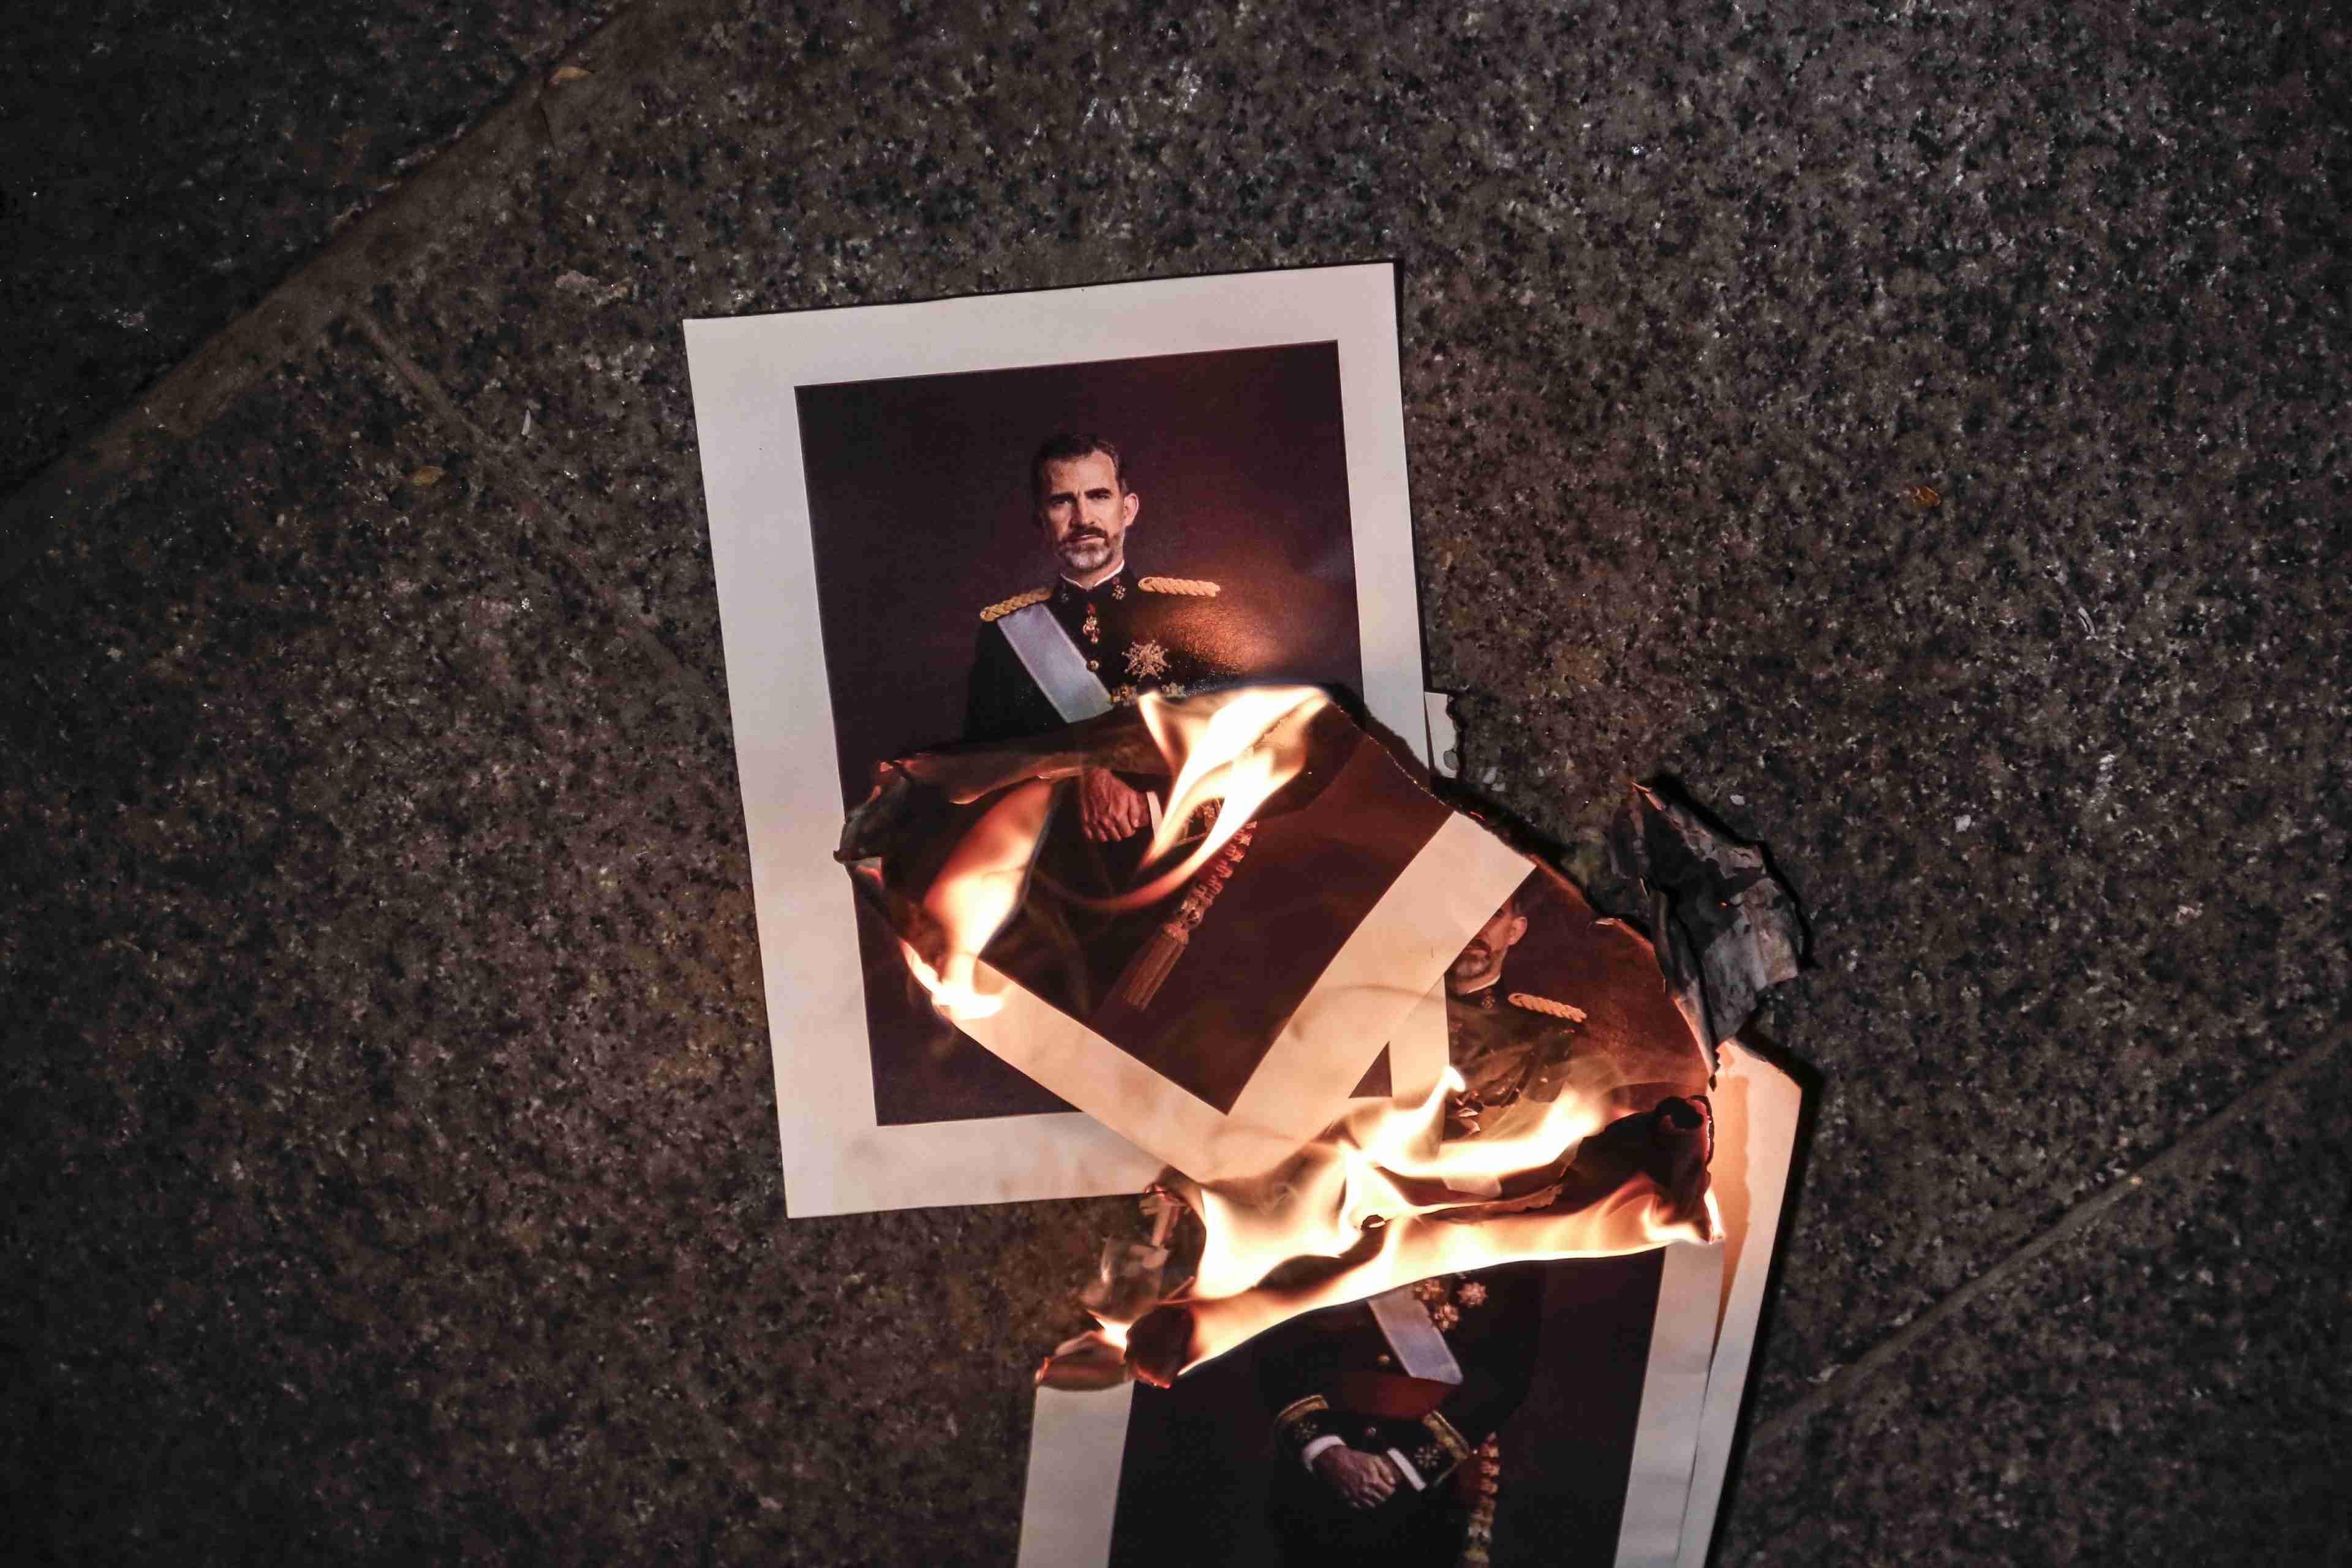 Archivada la causa contra dos jóvenes por quemar fotos del Rey